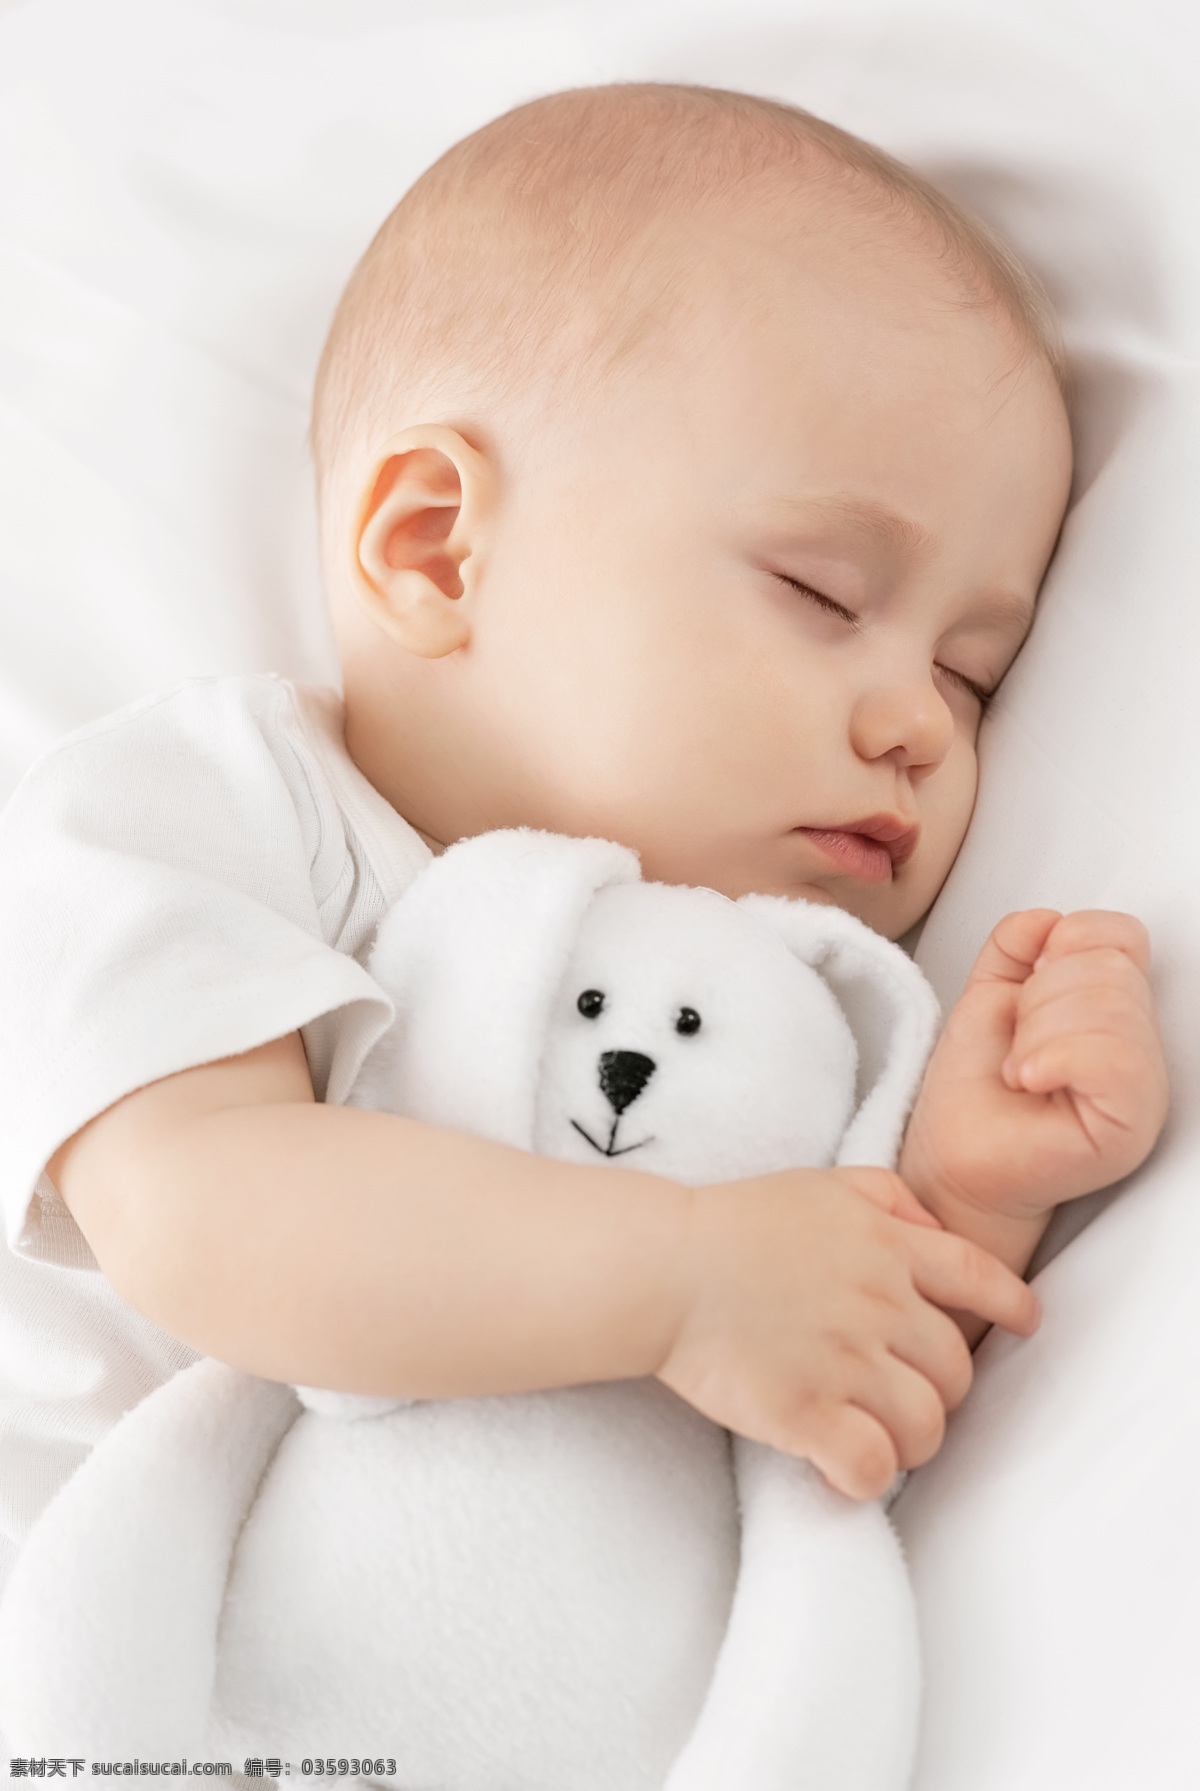 正在 睡觉 孩子 毛绒玩具 人物 儿童 儿童图片 人物图片